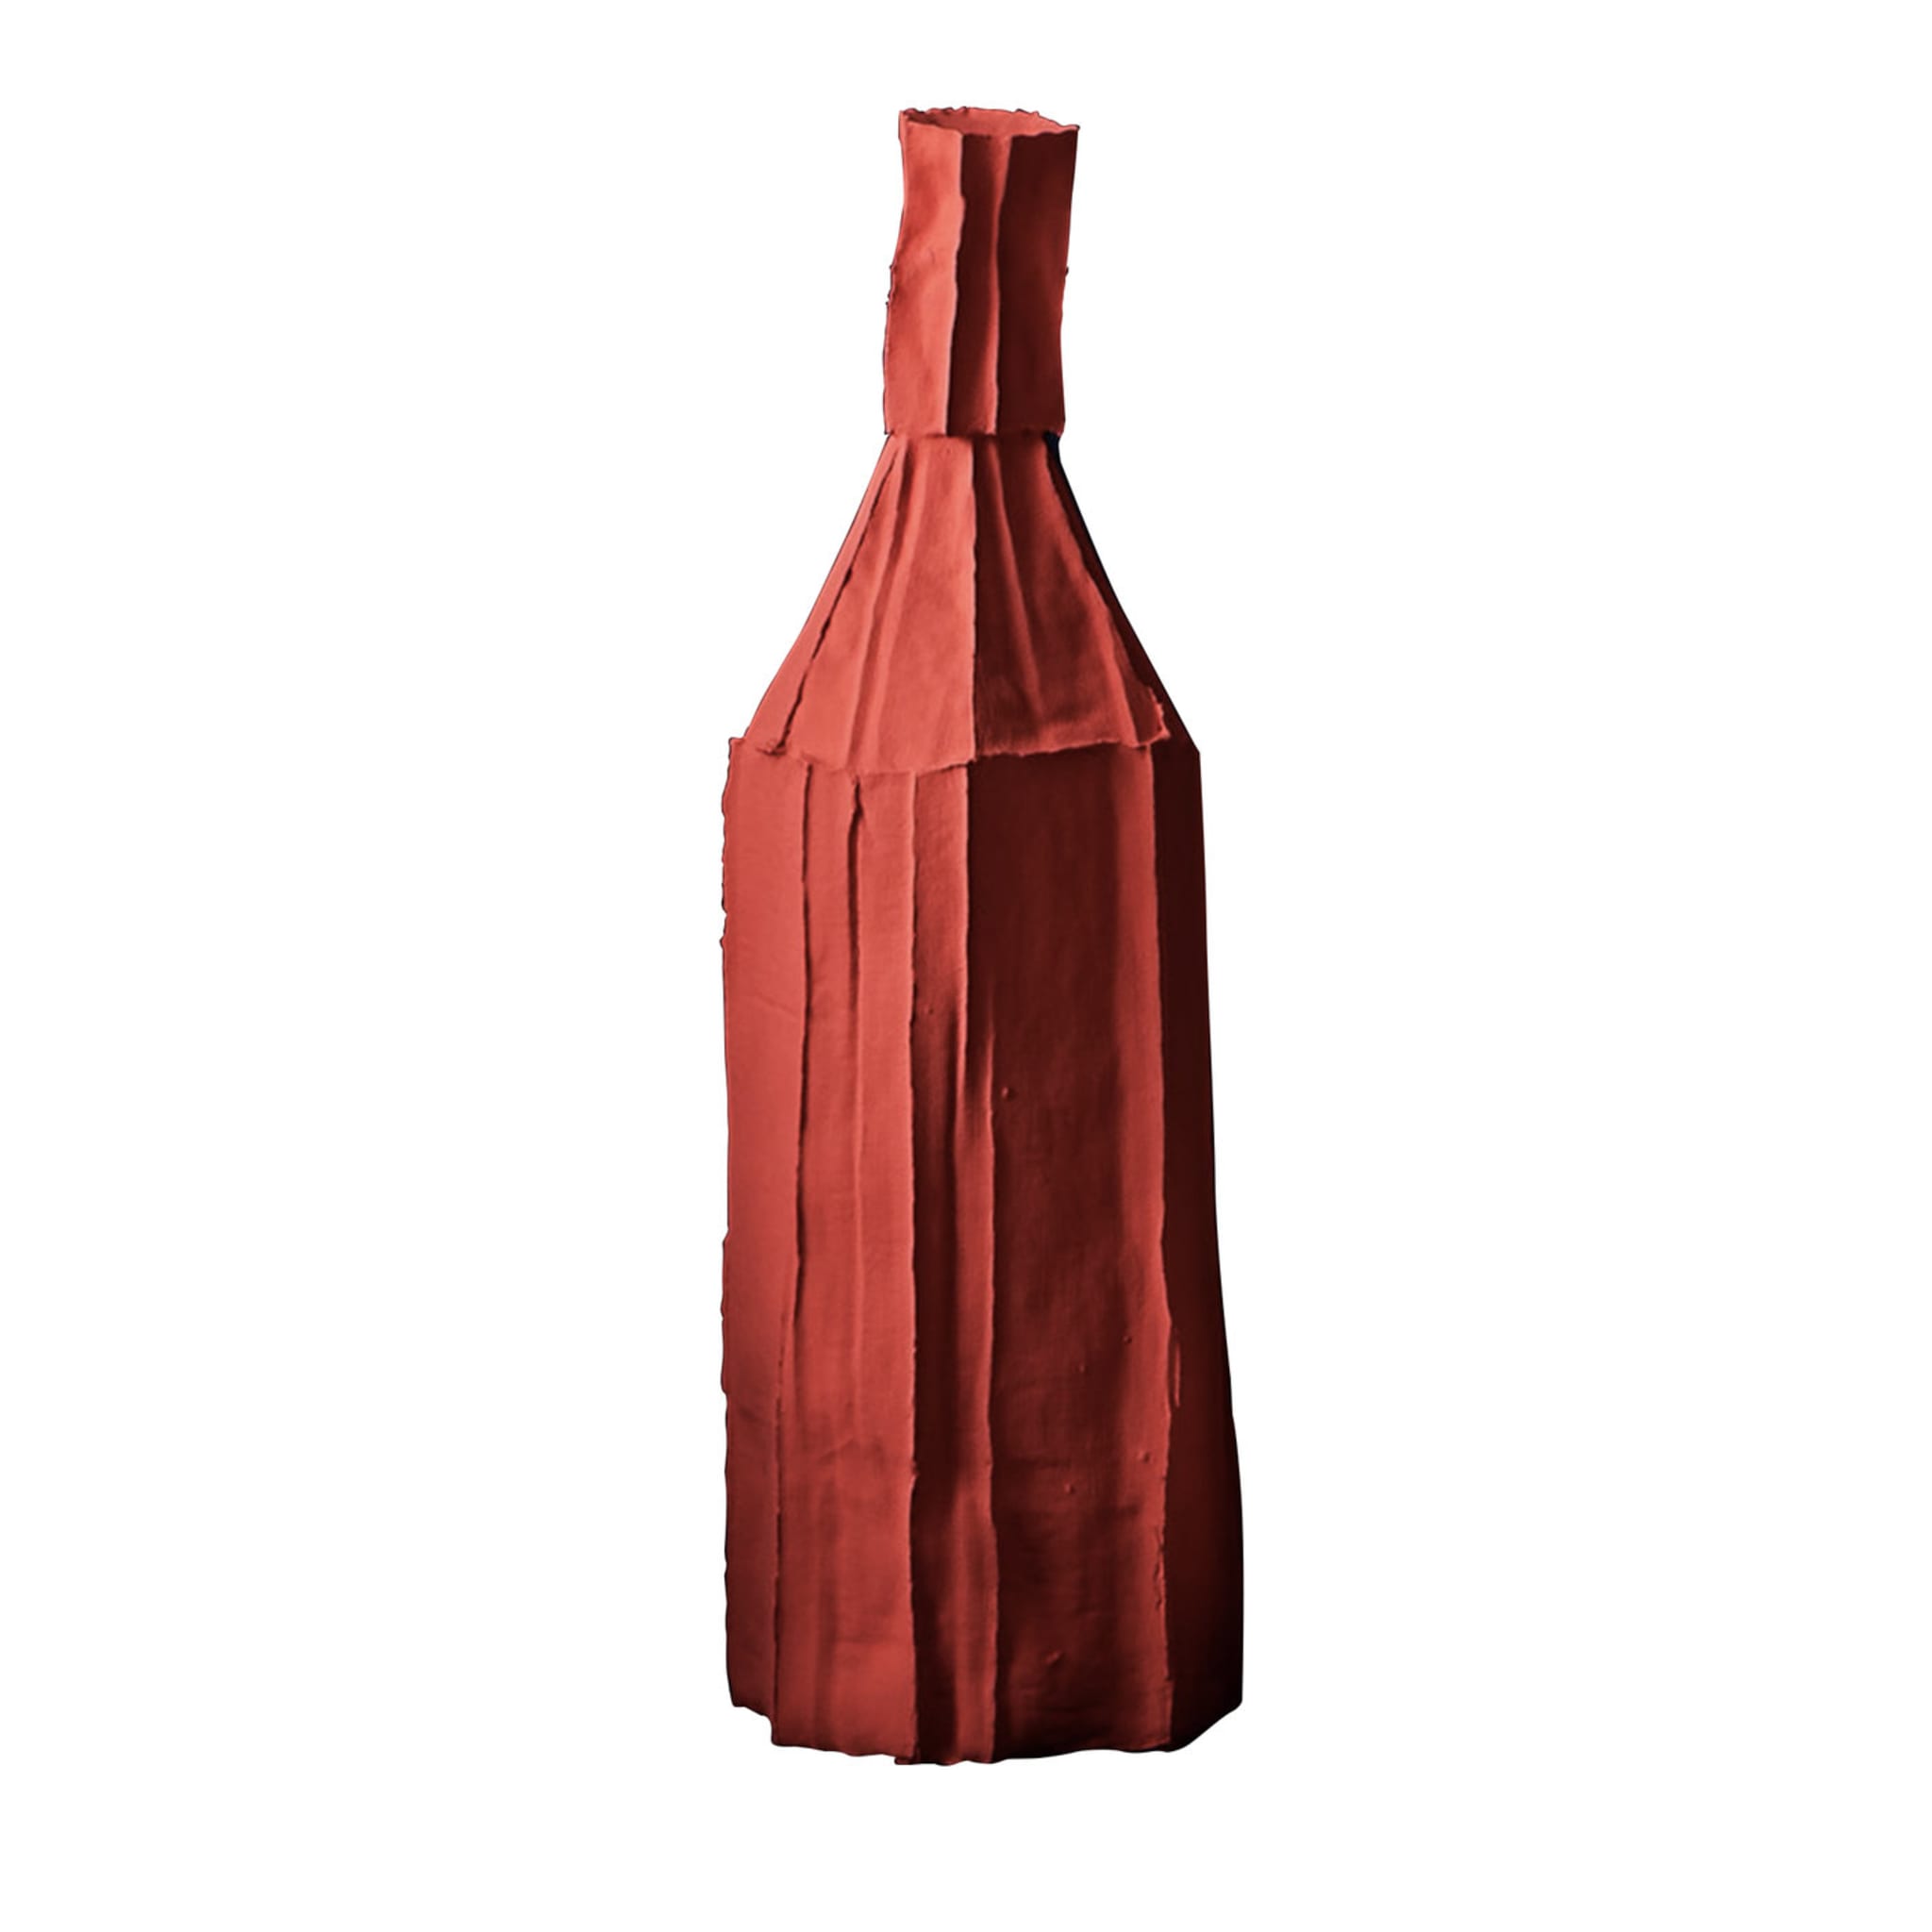 Bottiglia decorativa Cartocci Corteccia Red - Vista principale